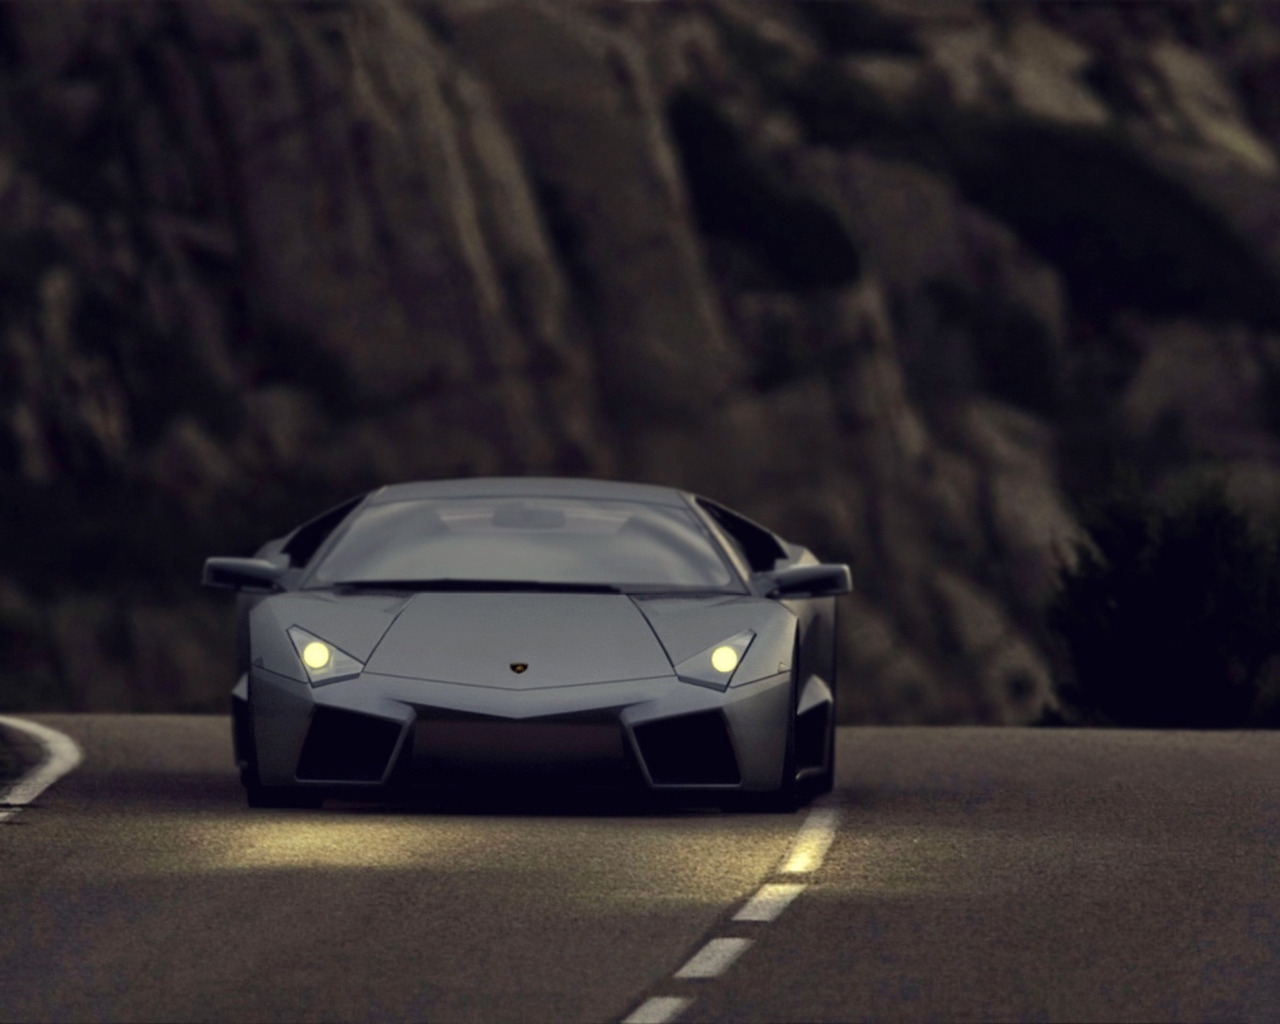 Lamborghini Reventon Black Matte for 1280 x 1024 resolution